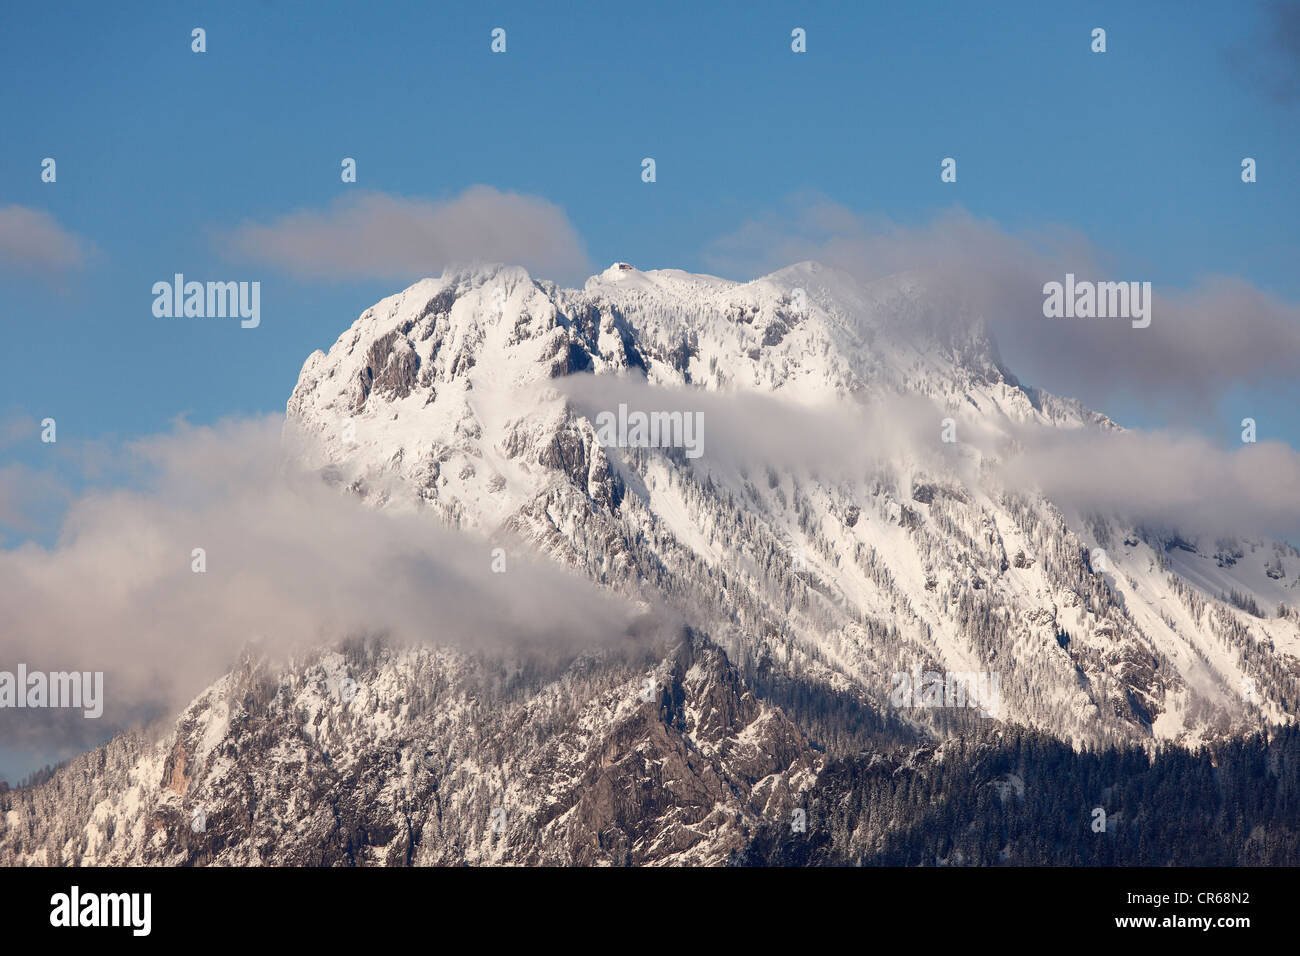 Austria, Upper Austria, View of Traunstein Mountain Stock Photo